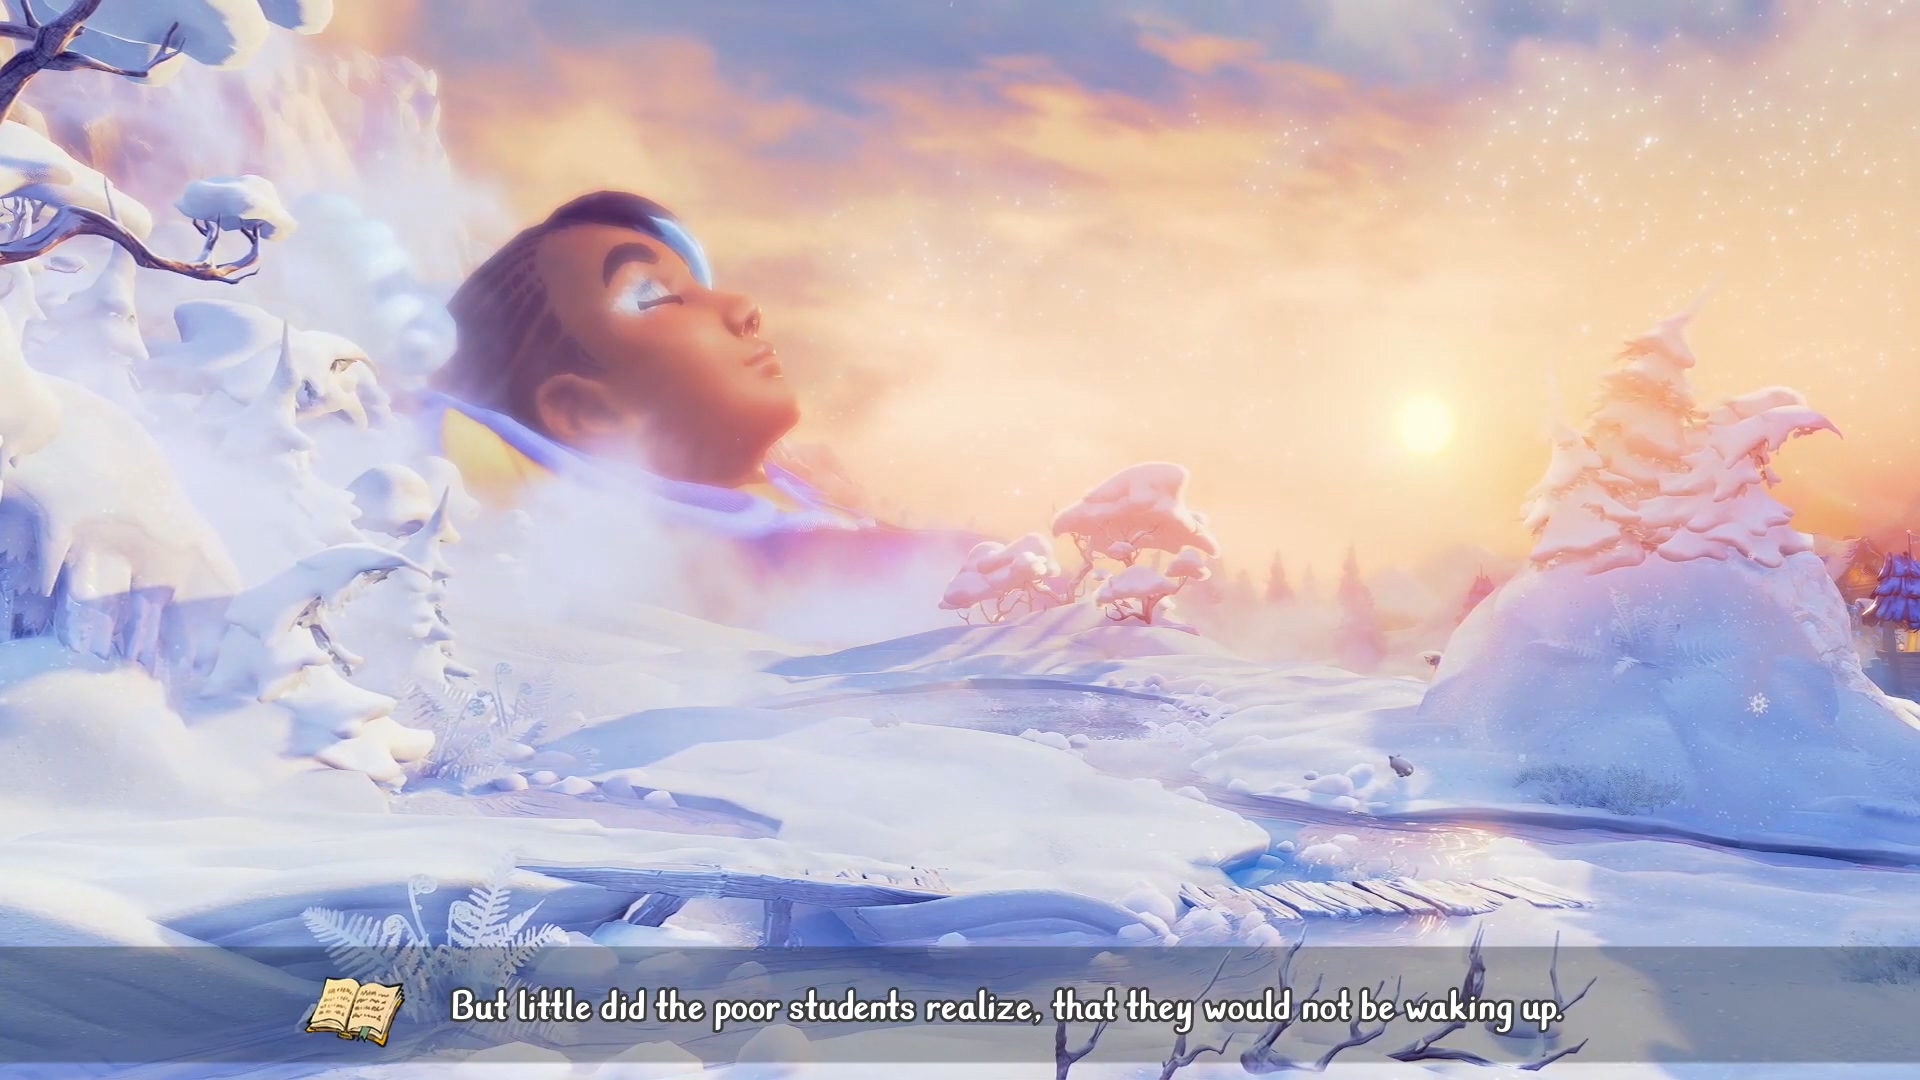 《三位一体4》DLC“神秘旋律”公开 11月登陆PC